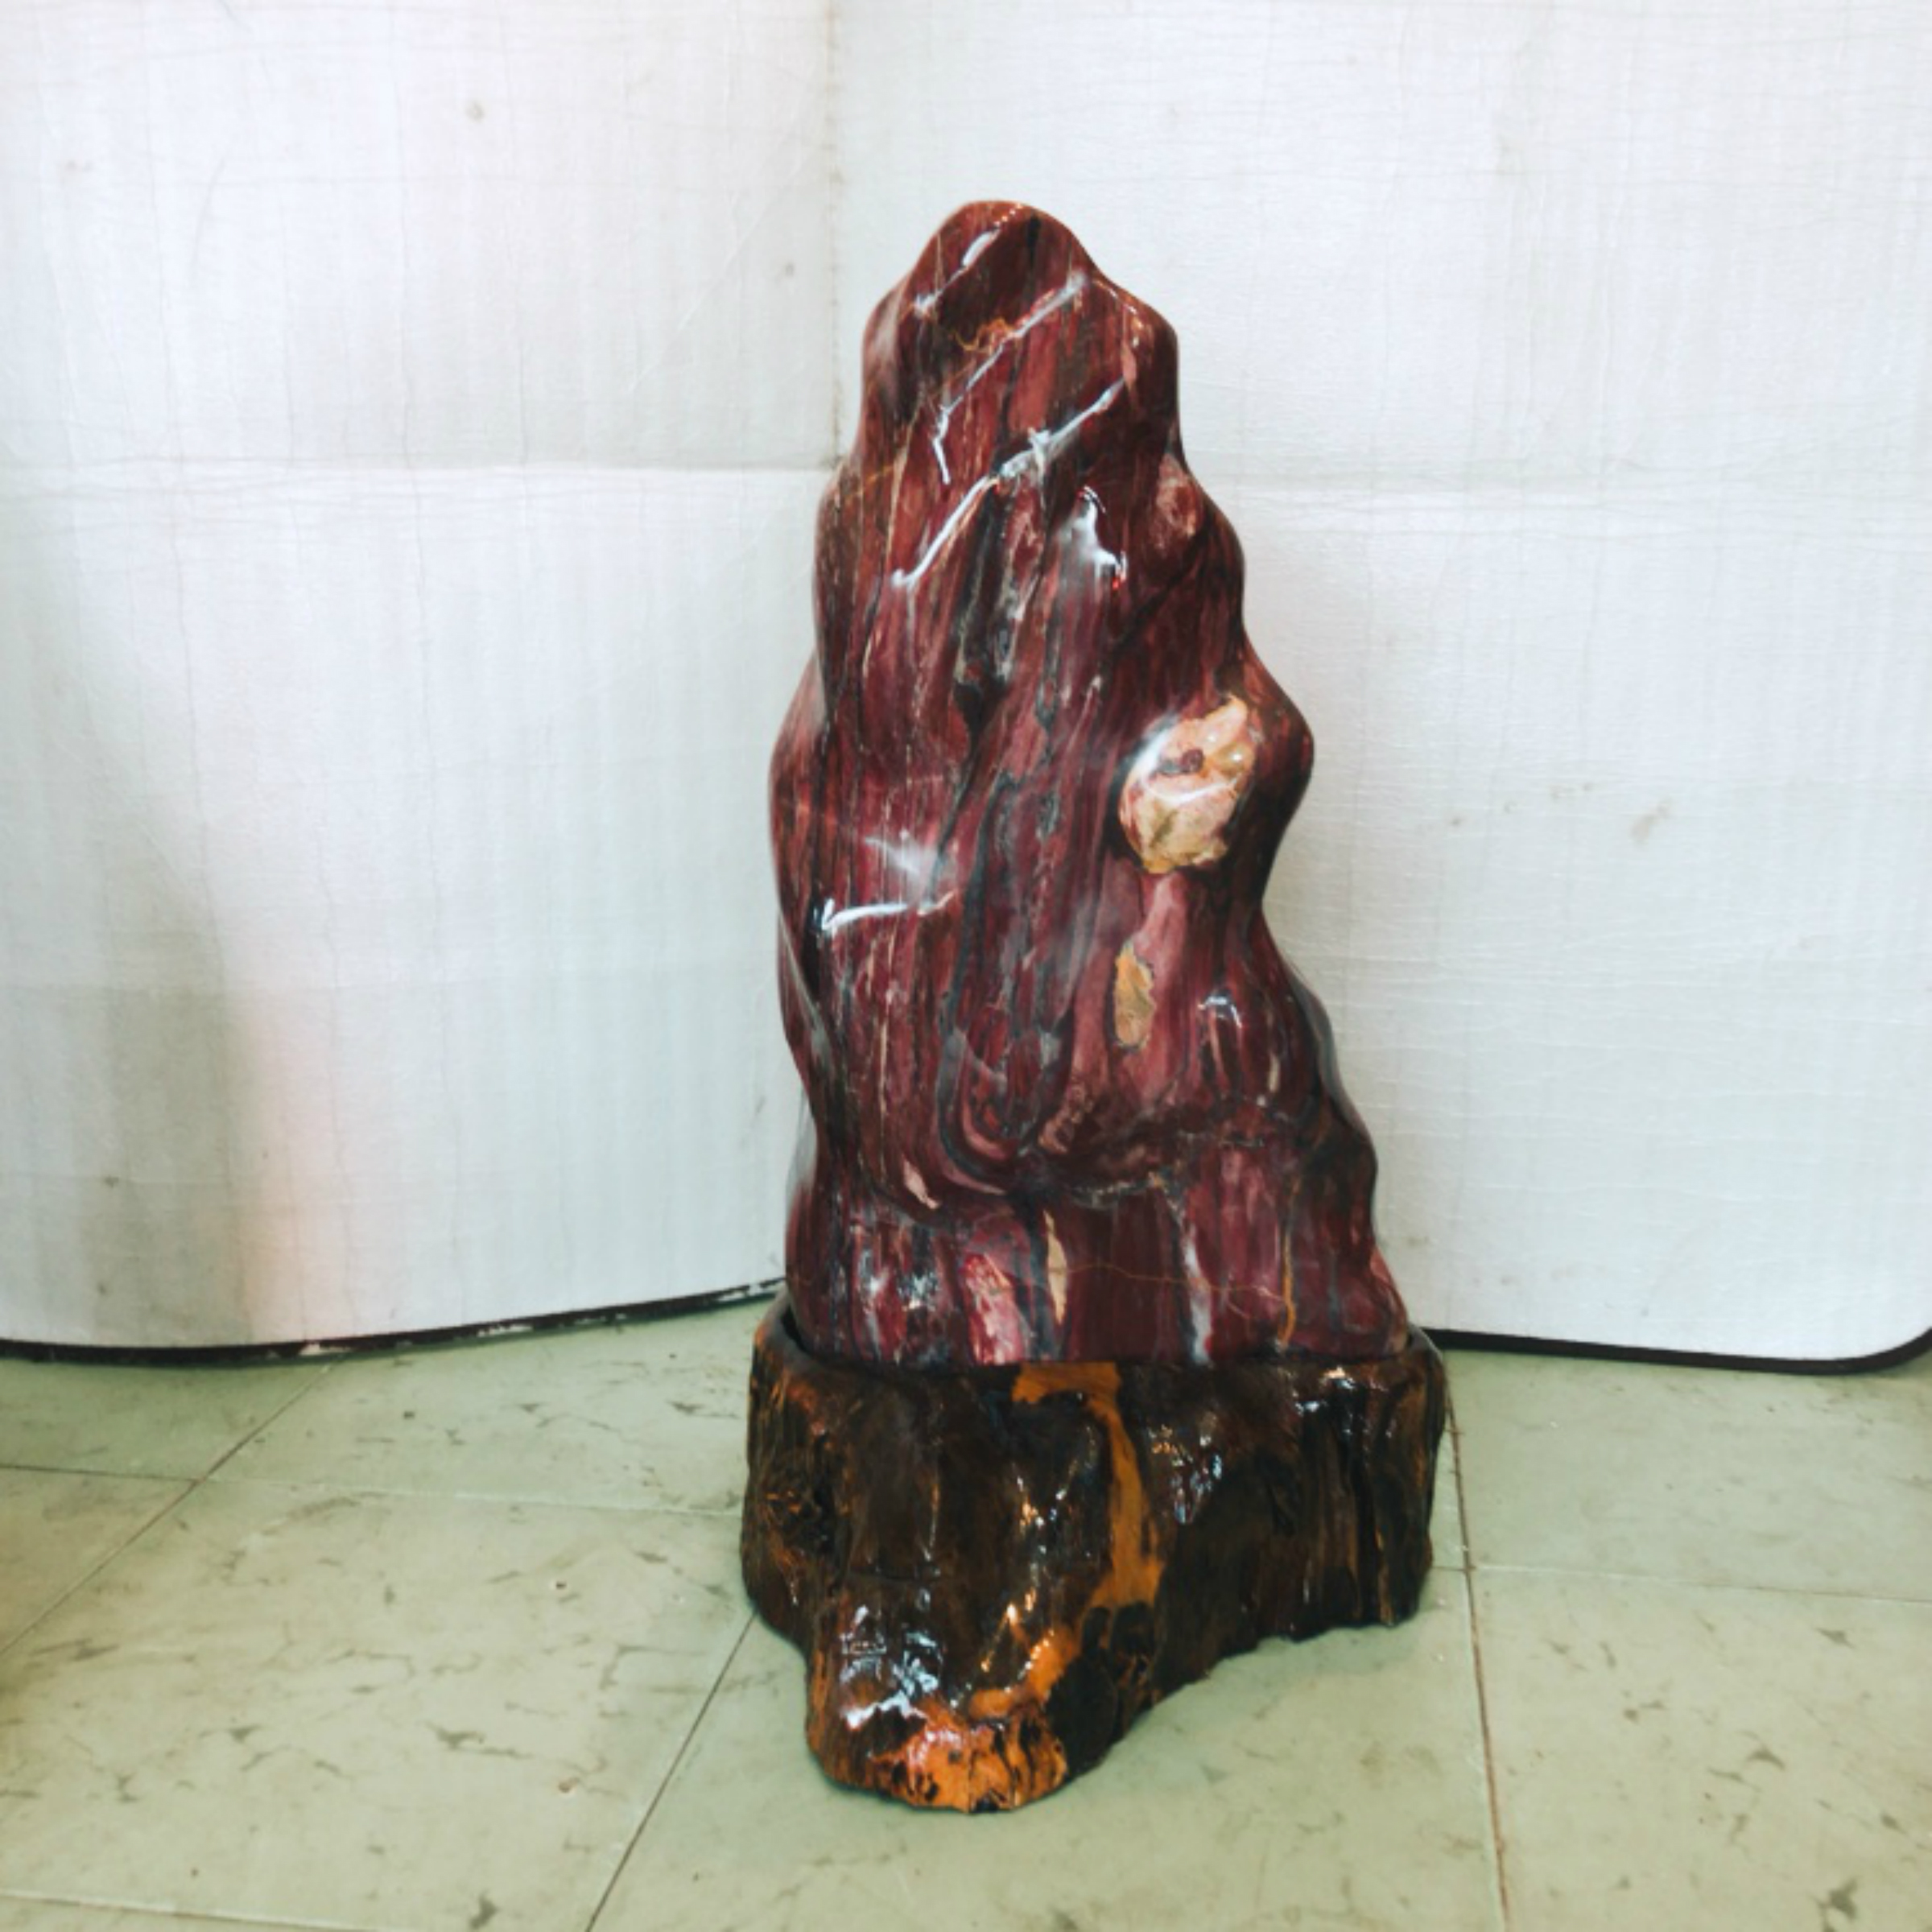 Cây đá đỏ tự nhiên trấn trạch cho người mệnh Thổ và hỏa cao 60 cm rộng 34 cm bao gồm cả chân đế gỗ rừng